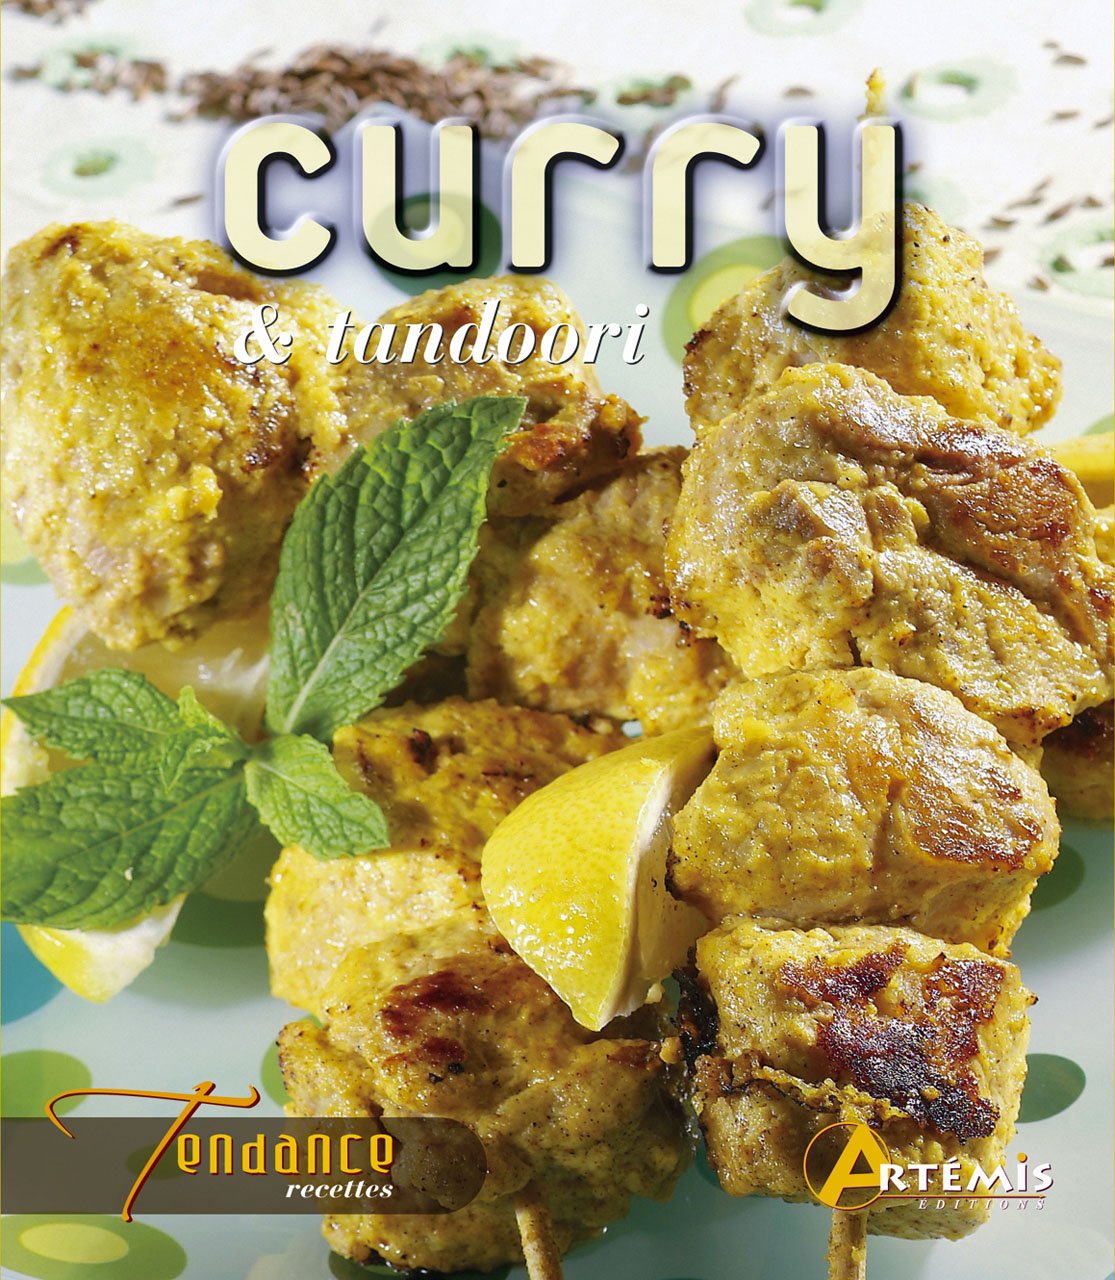 Tendance recettes : Curry et tandoori